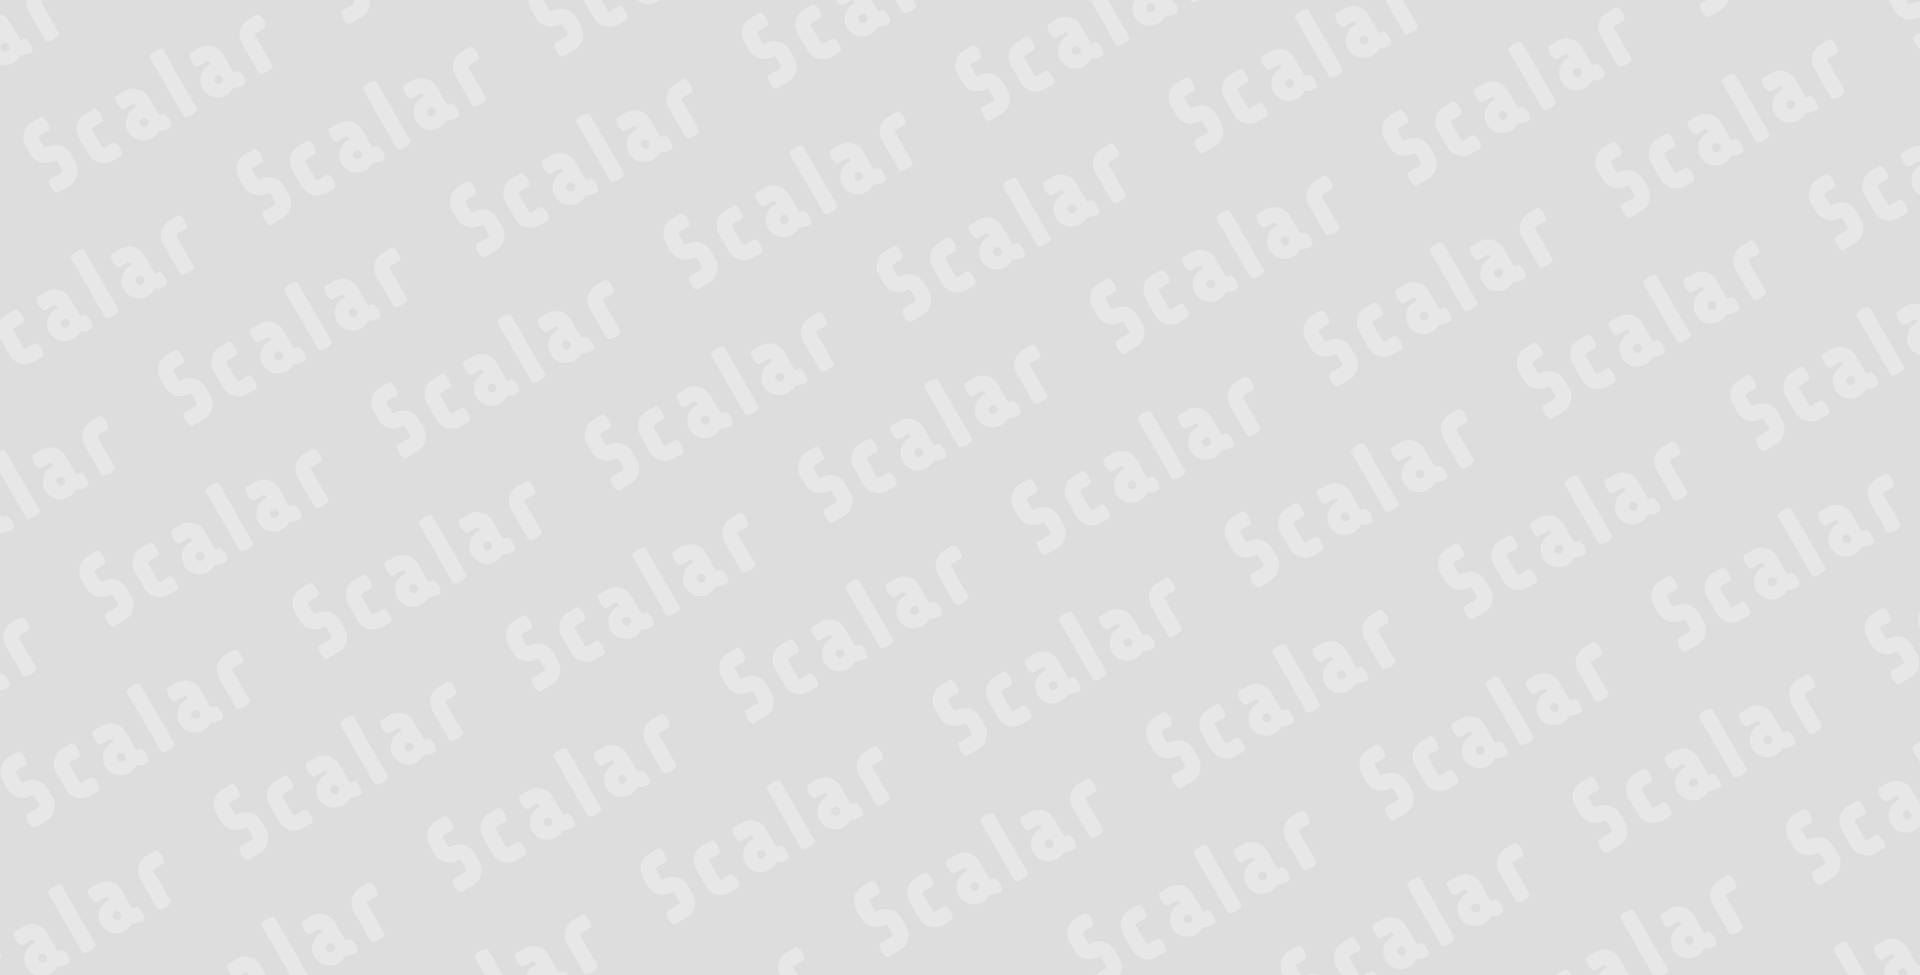 補助金・助成金の申請資料作成支援プラットフォームScalar（スカラー）